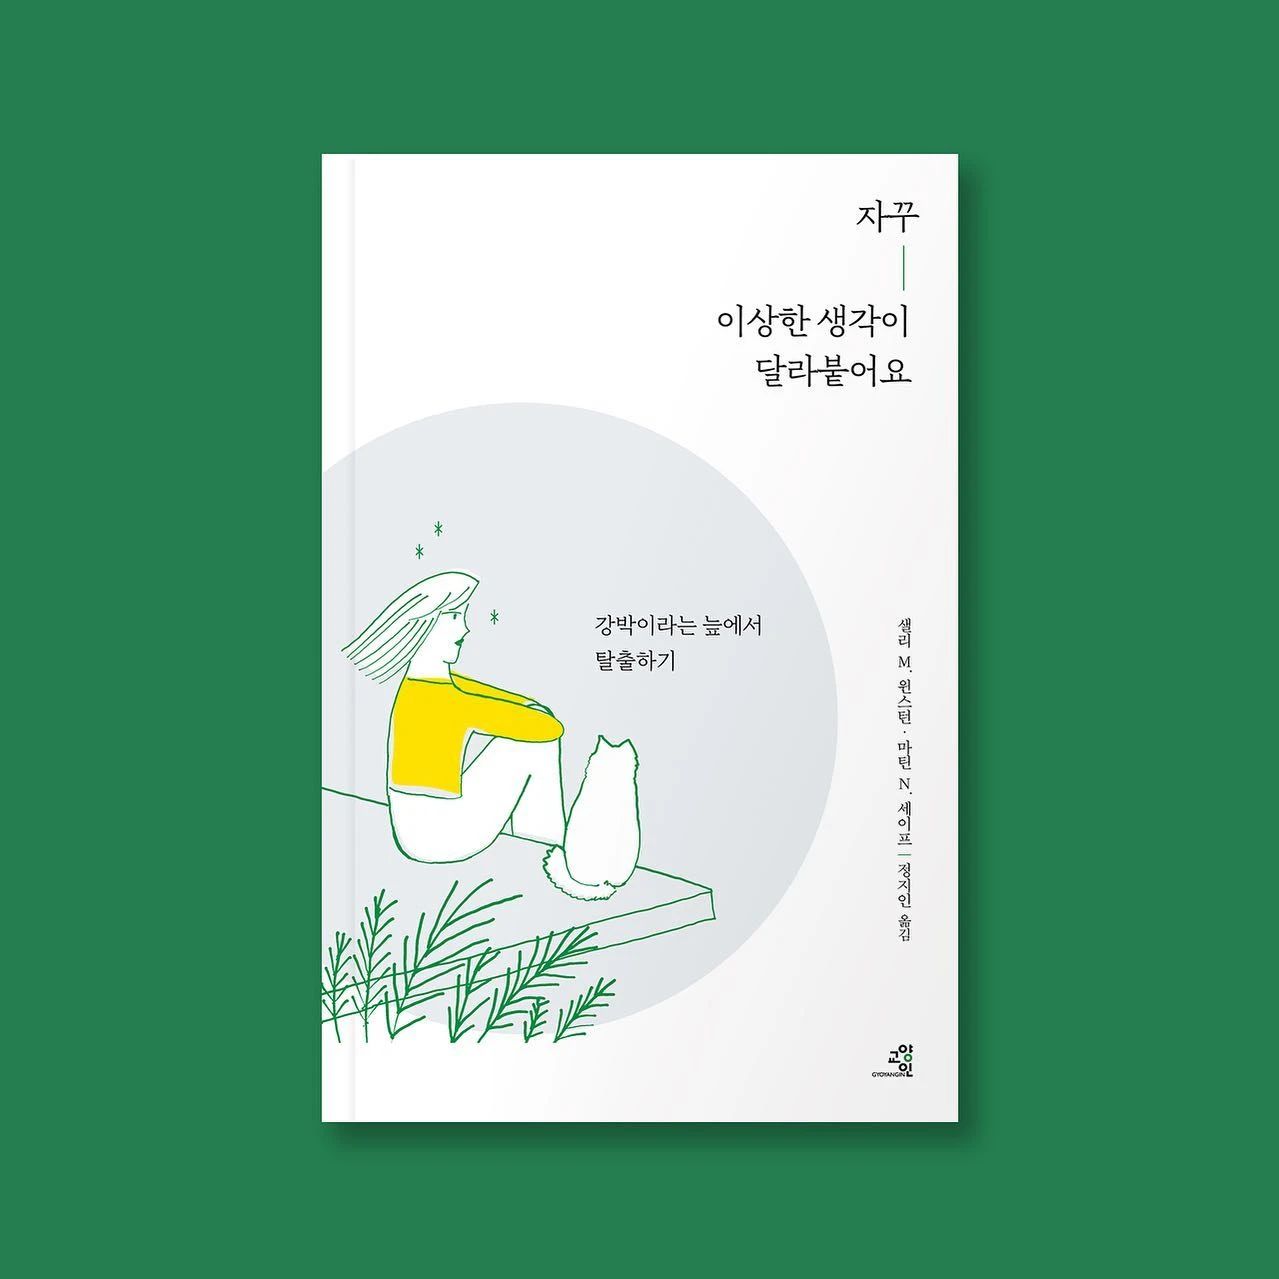 充满灵感的韩国书籍封面设计作品。